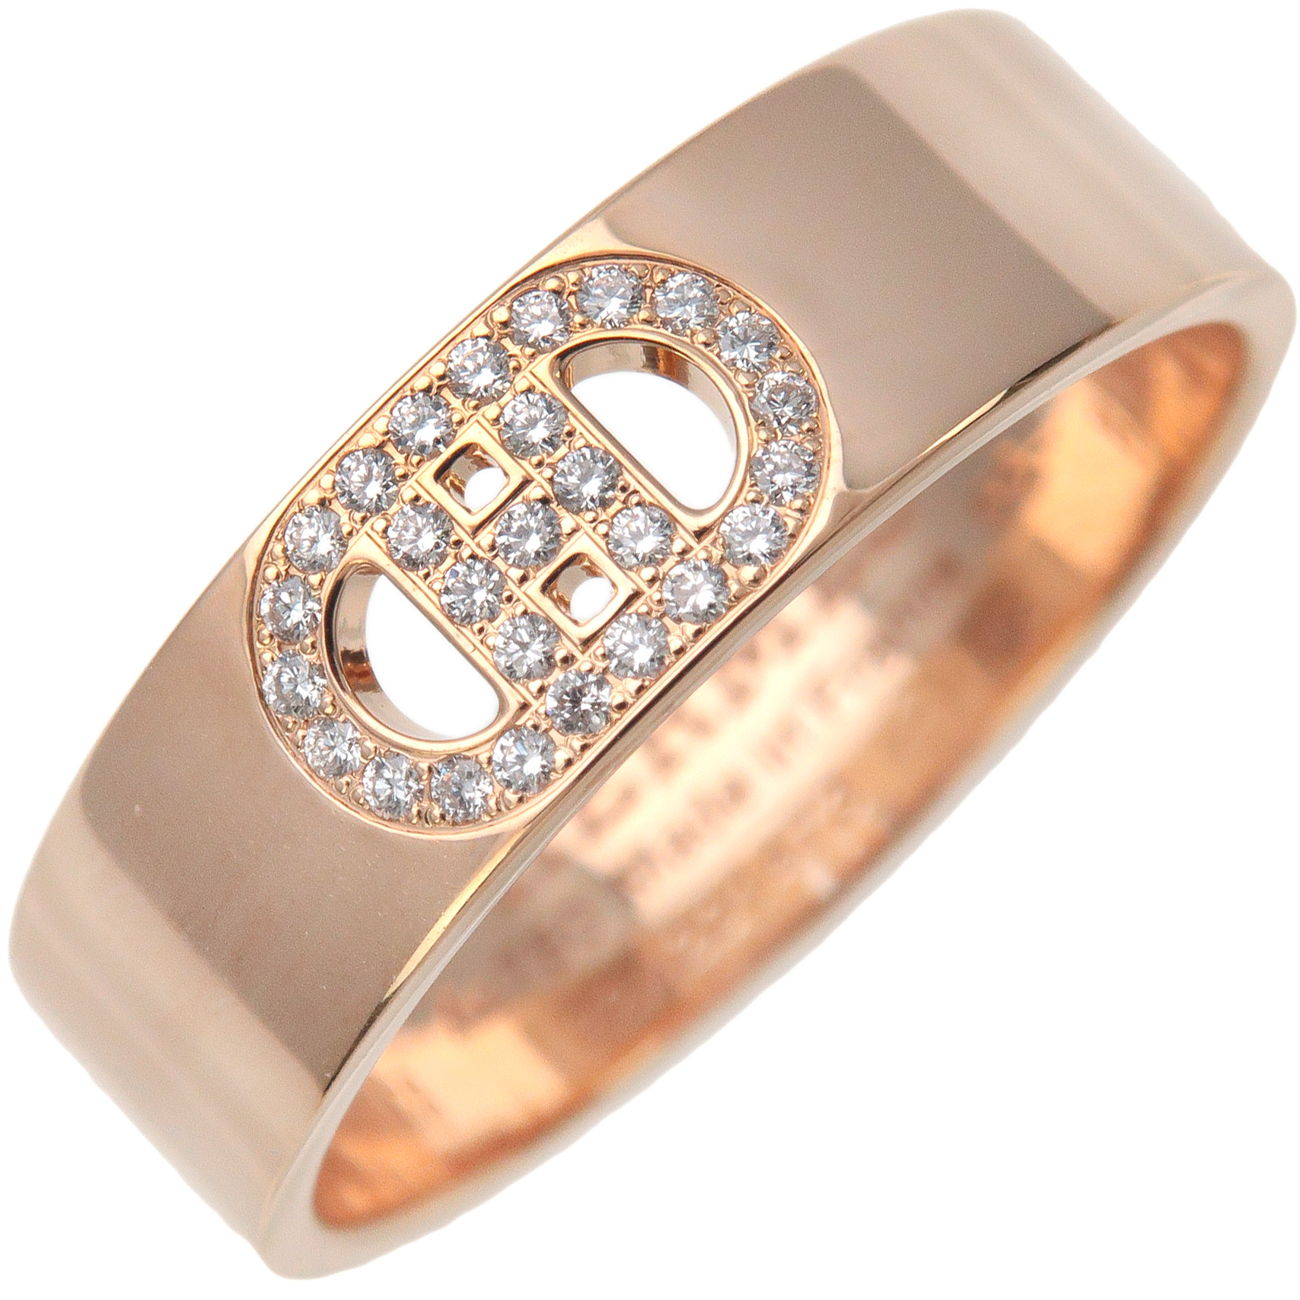 Hermes-H-Dunkle-Diamond-Ring-PM-K18PG-Rose-Gold-#56-US7.5-8